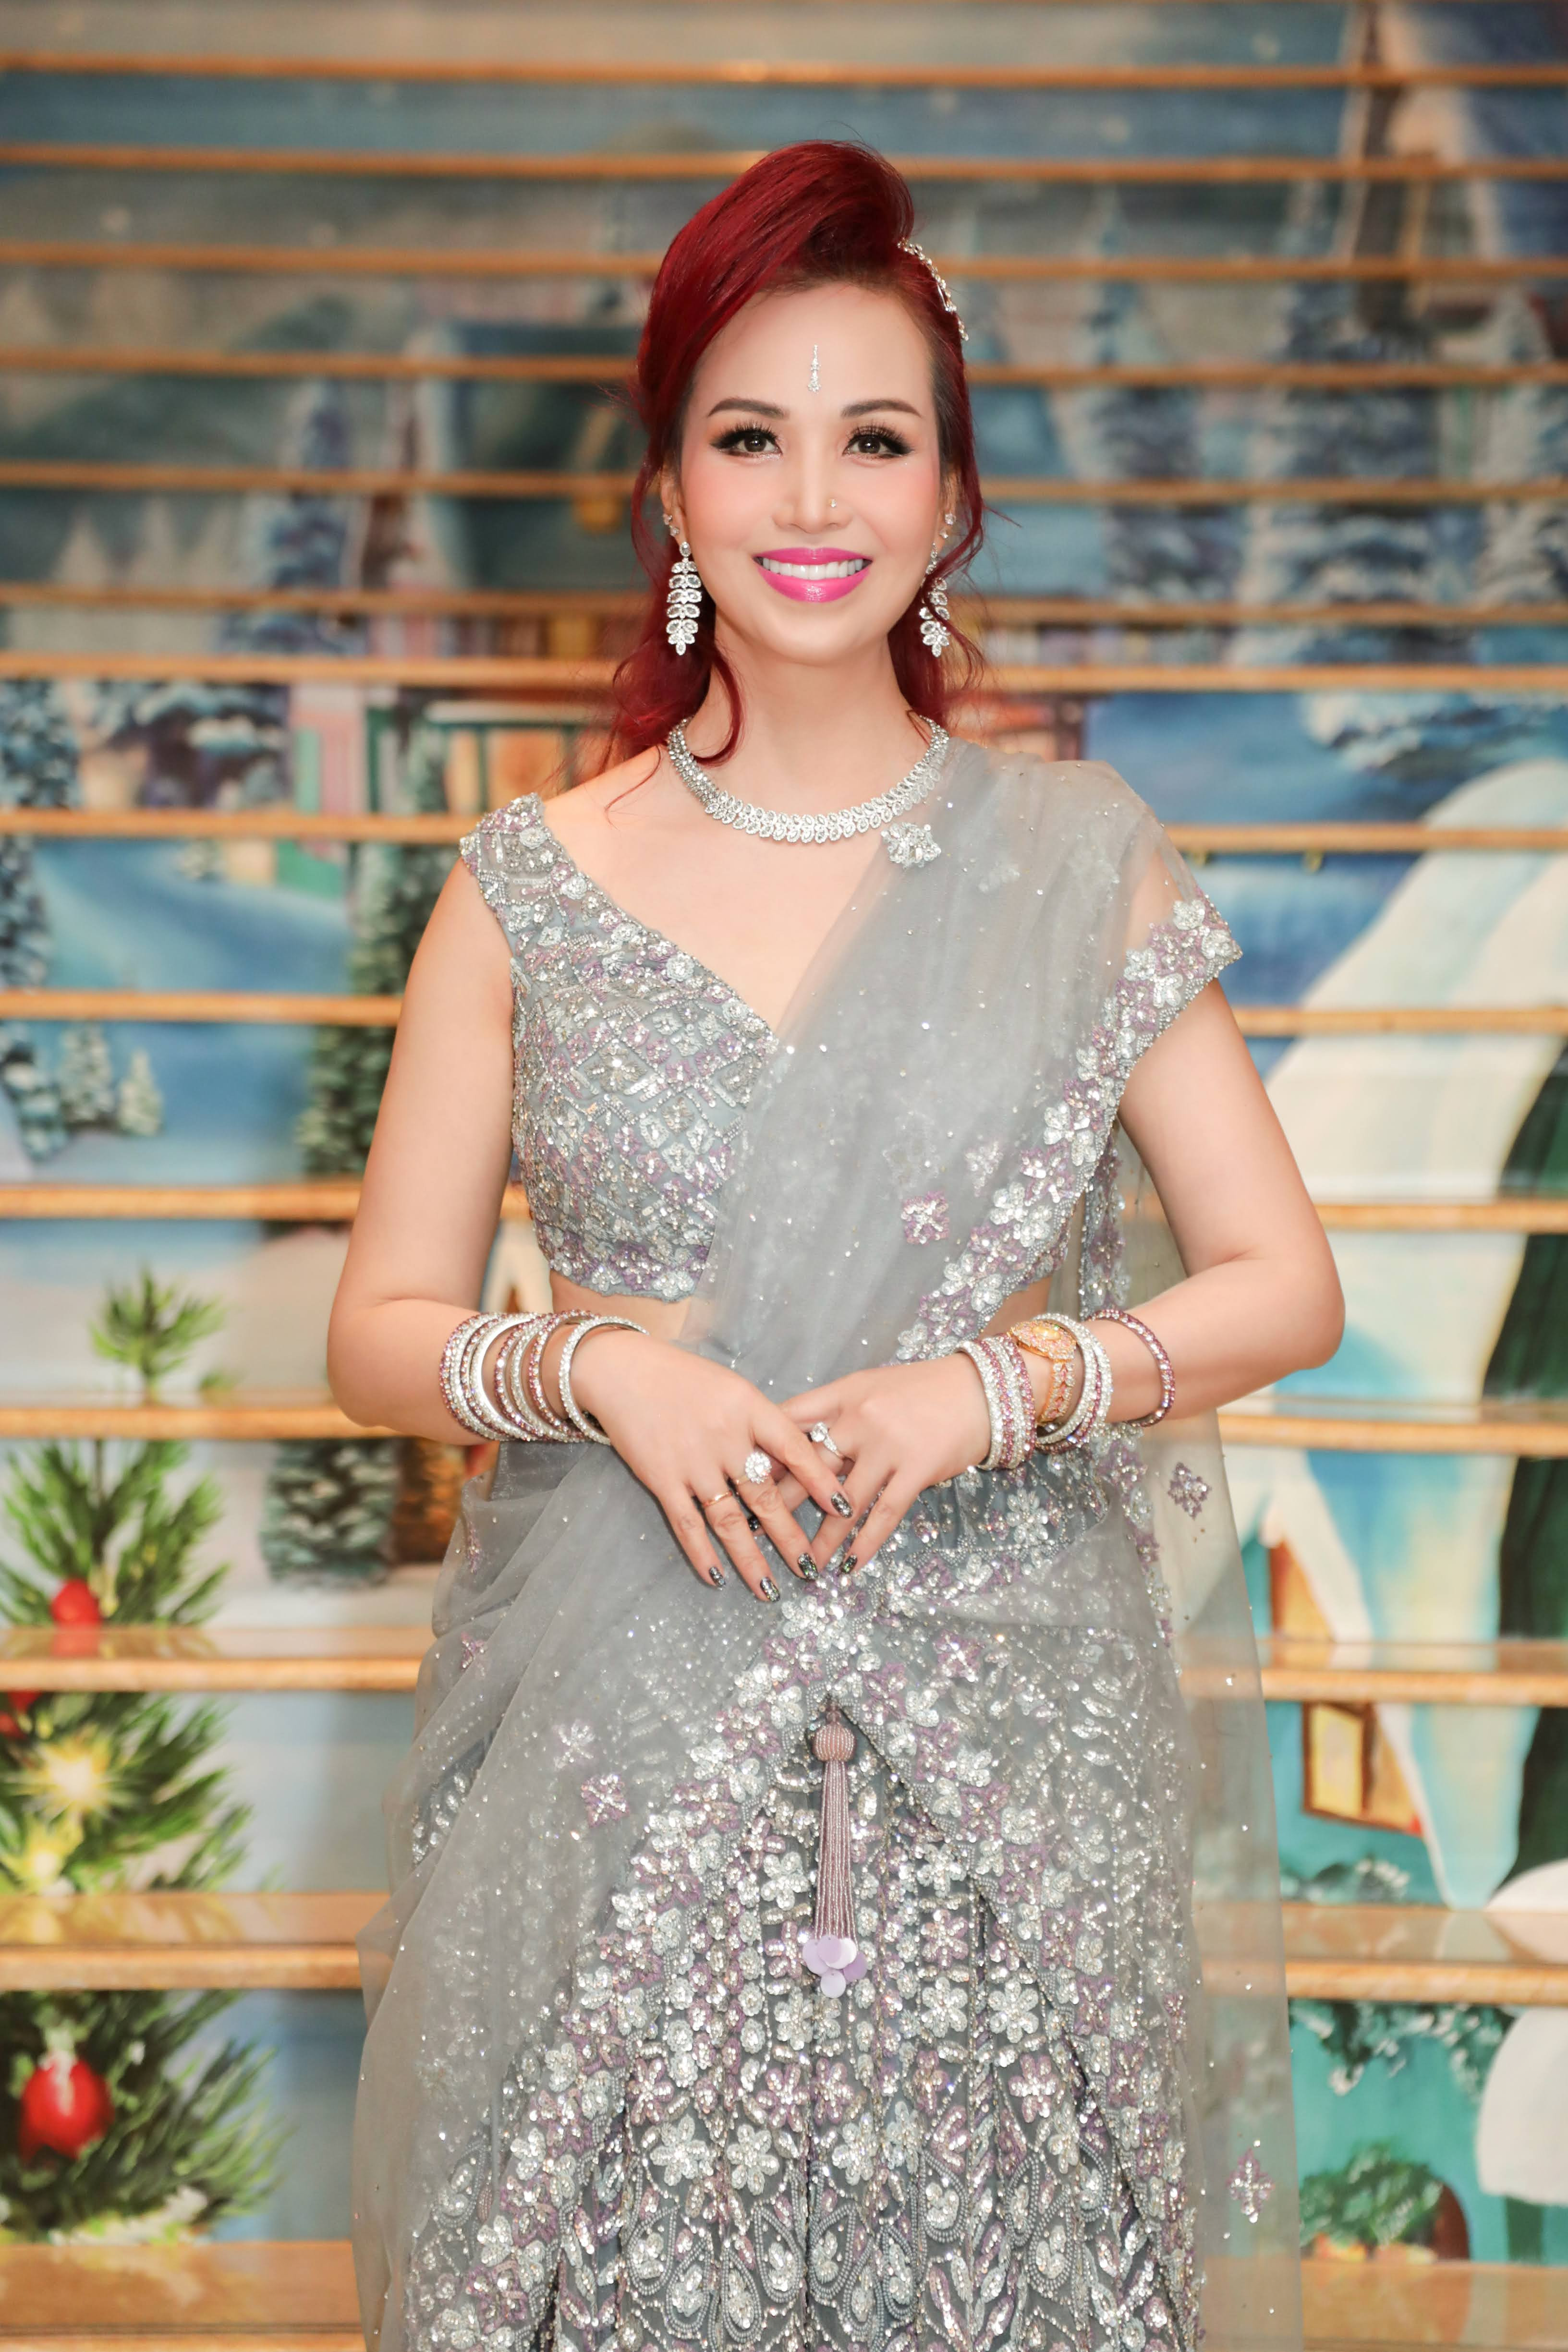 Hoa hậu Diệu Hoa mặc váy đính 45 nghìn viên pha lê, tình cảm bên chồng Ấn Độ